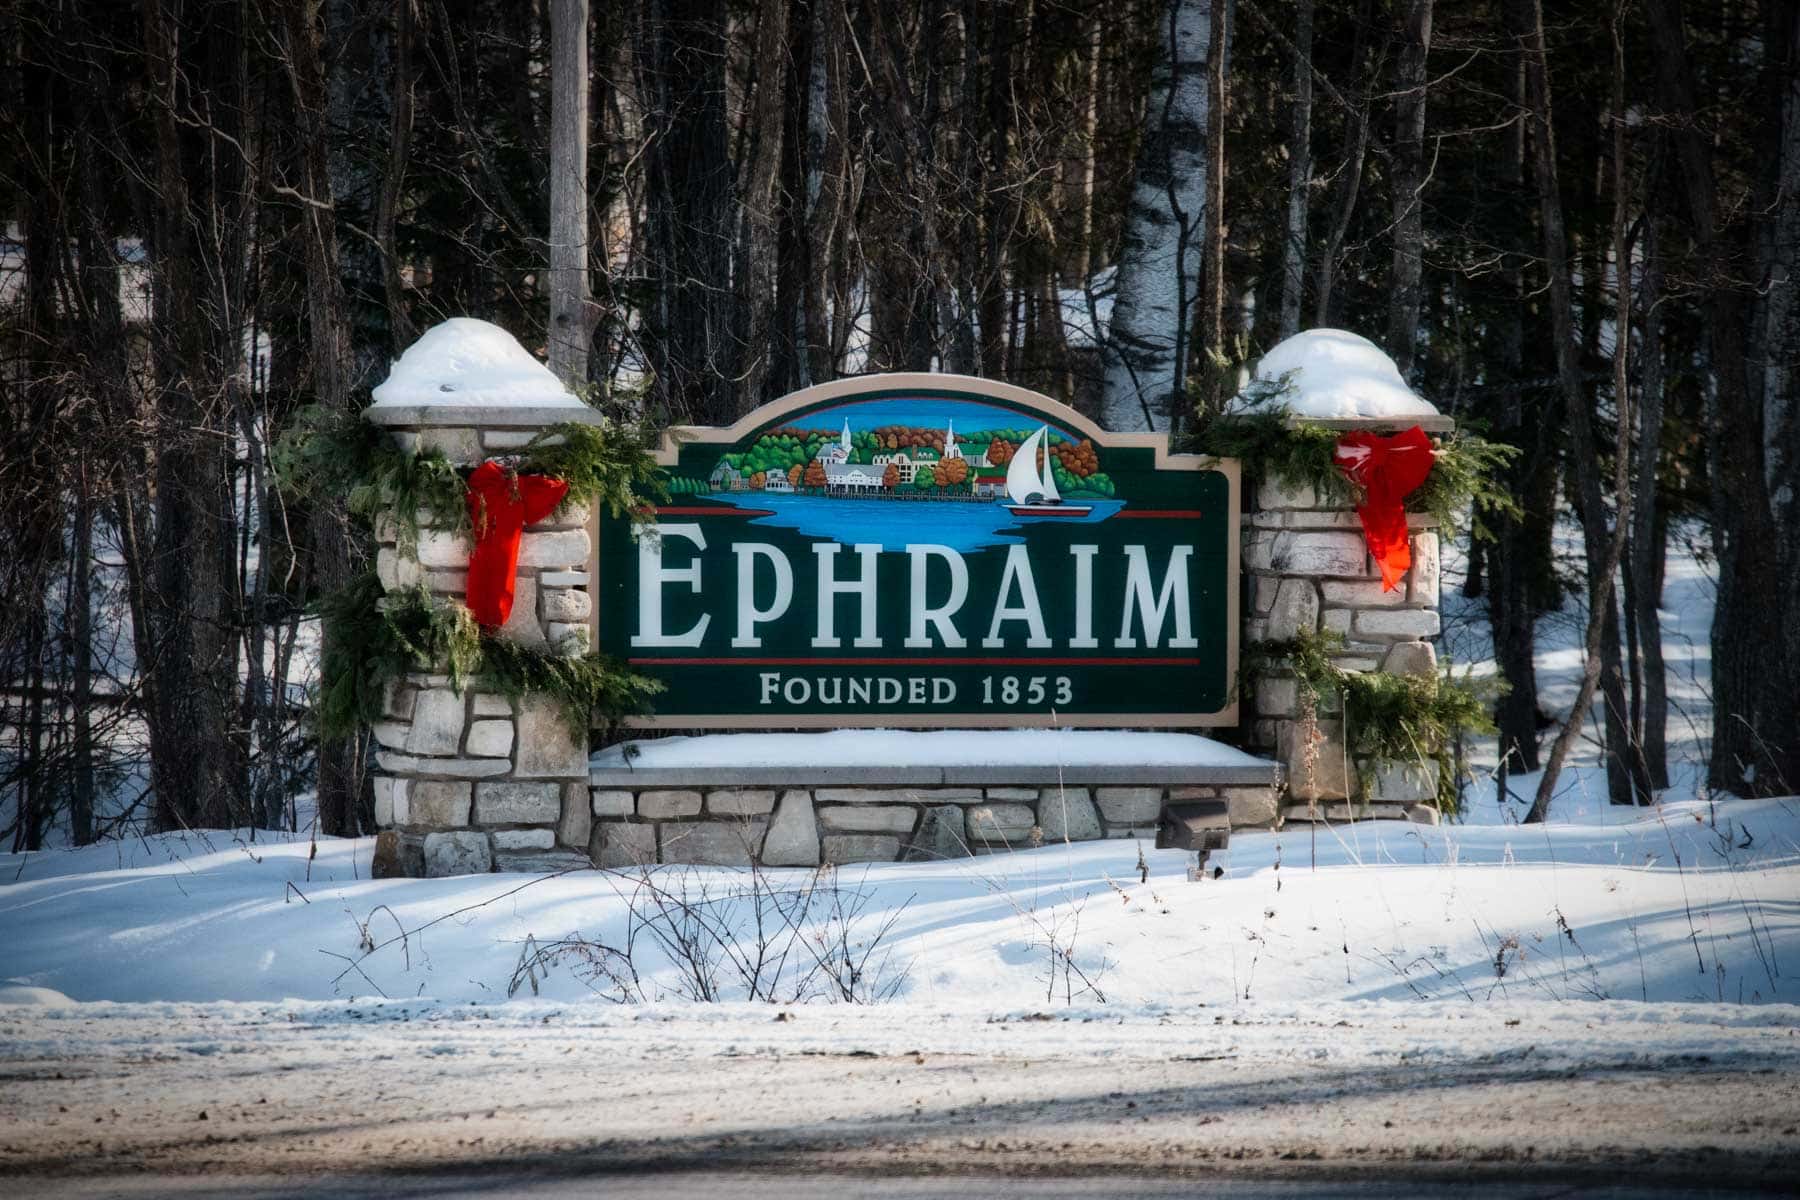 Ephraim Shores Resort Door County gift certificates